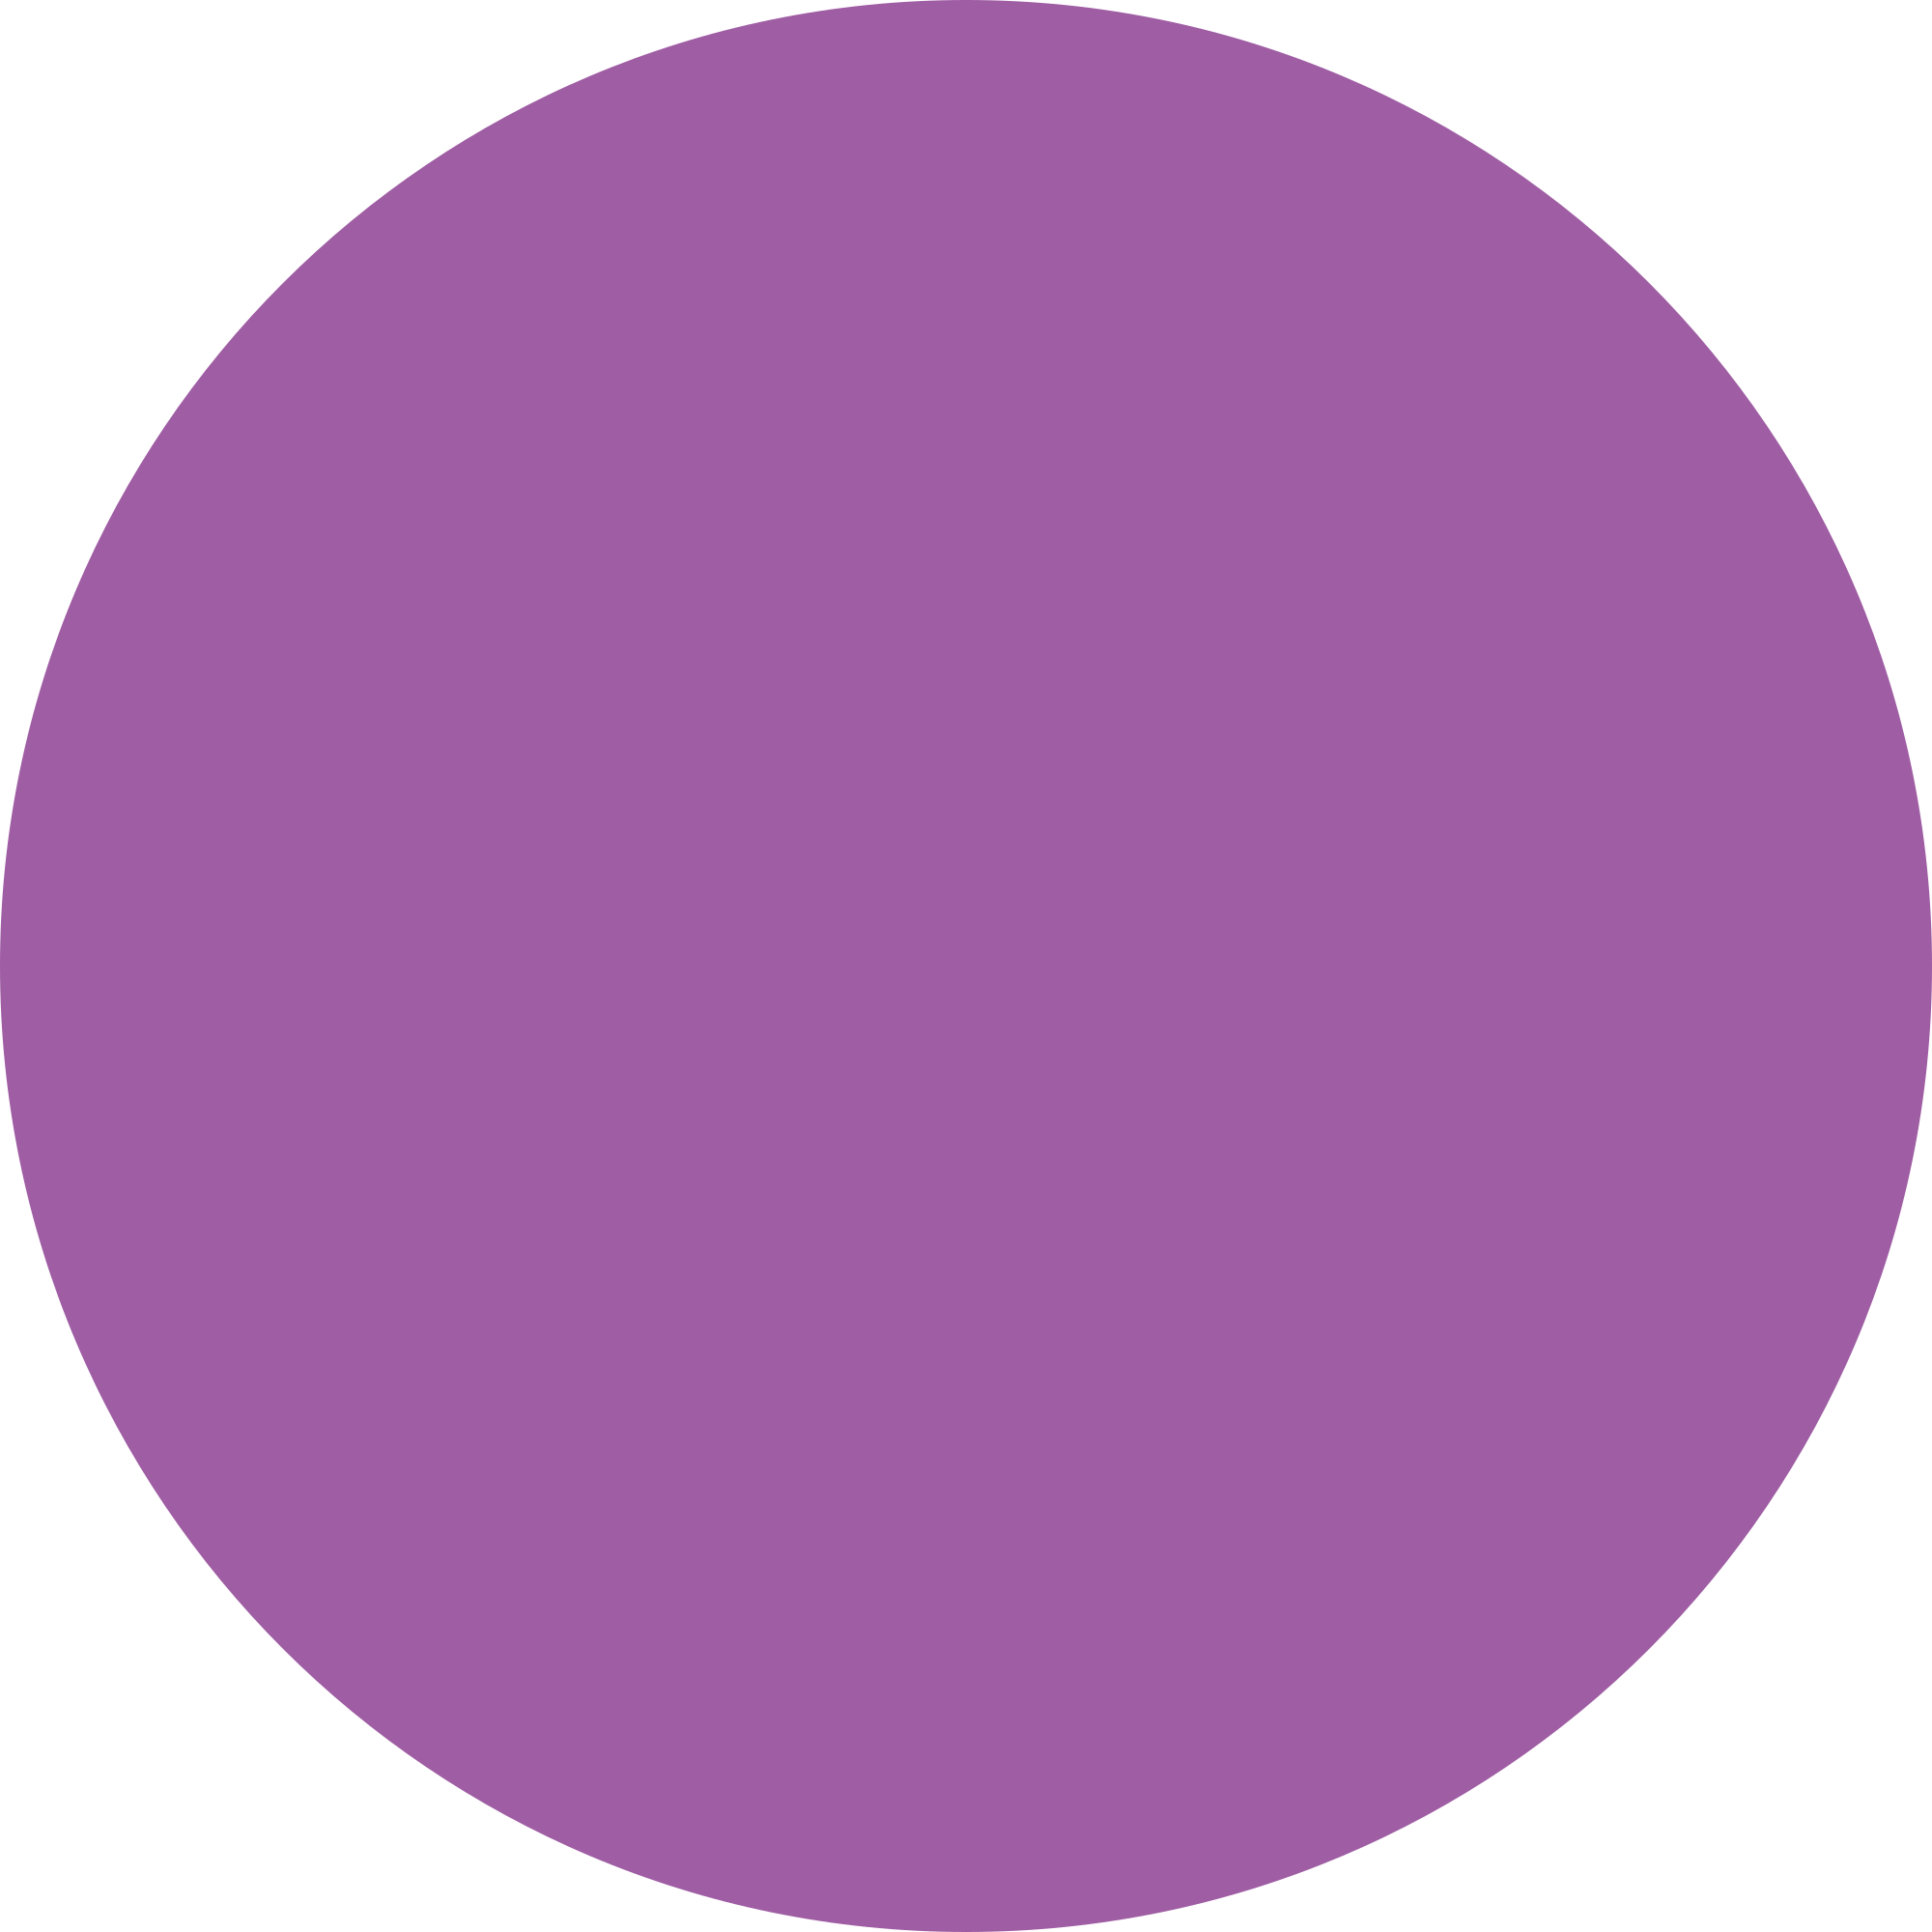 Lacmta Circle Purple Line - Light Purple Circle Transparent Clipart (1024x1024), Png Download